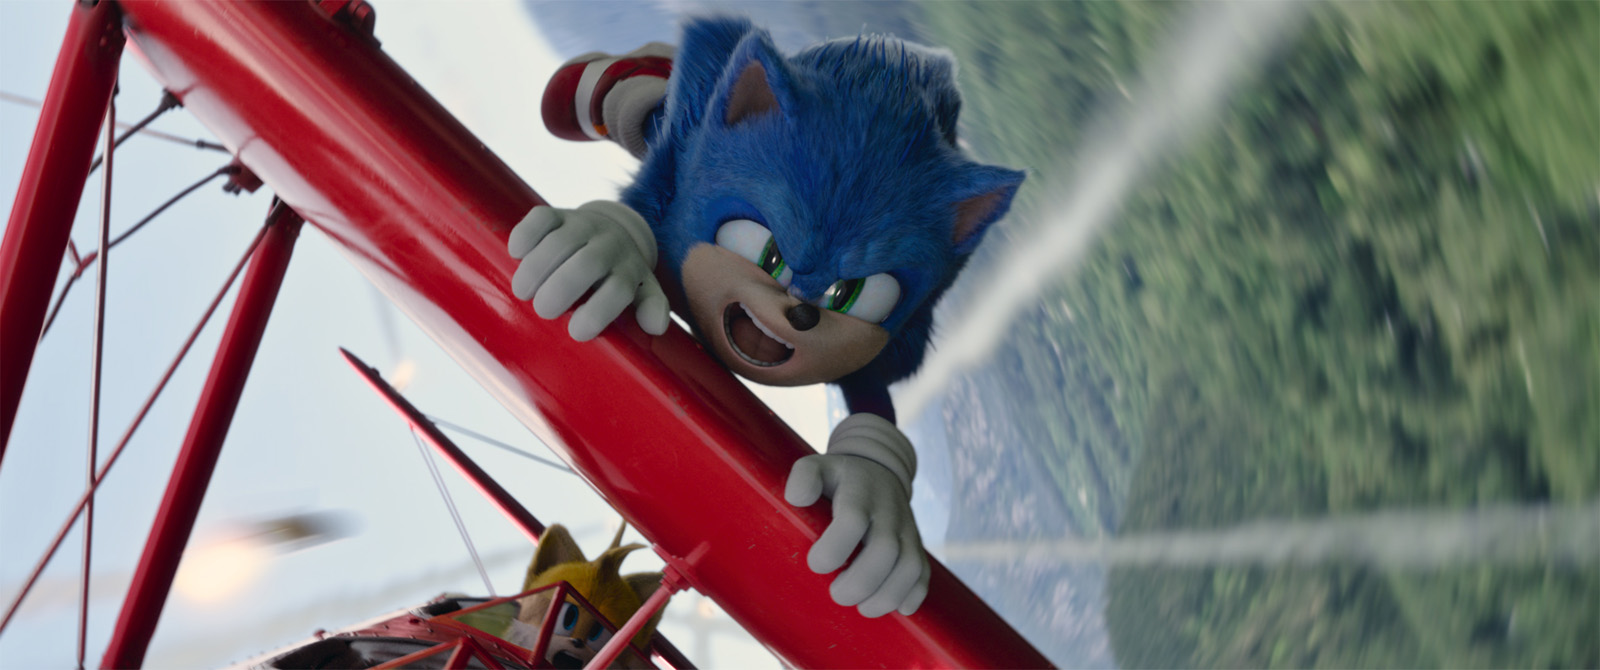 Vale a pena assistir a Sonic: O Filme?